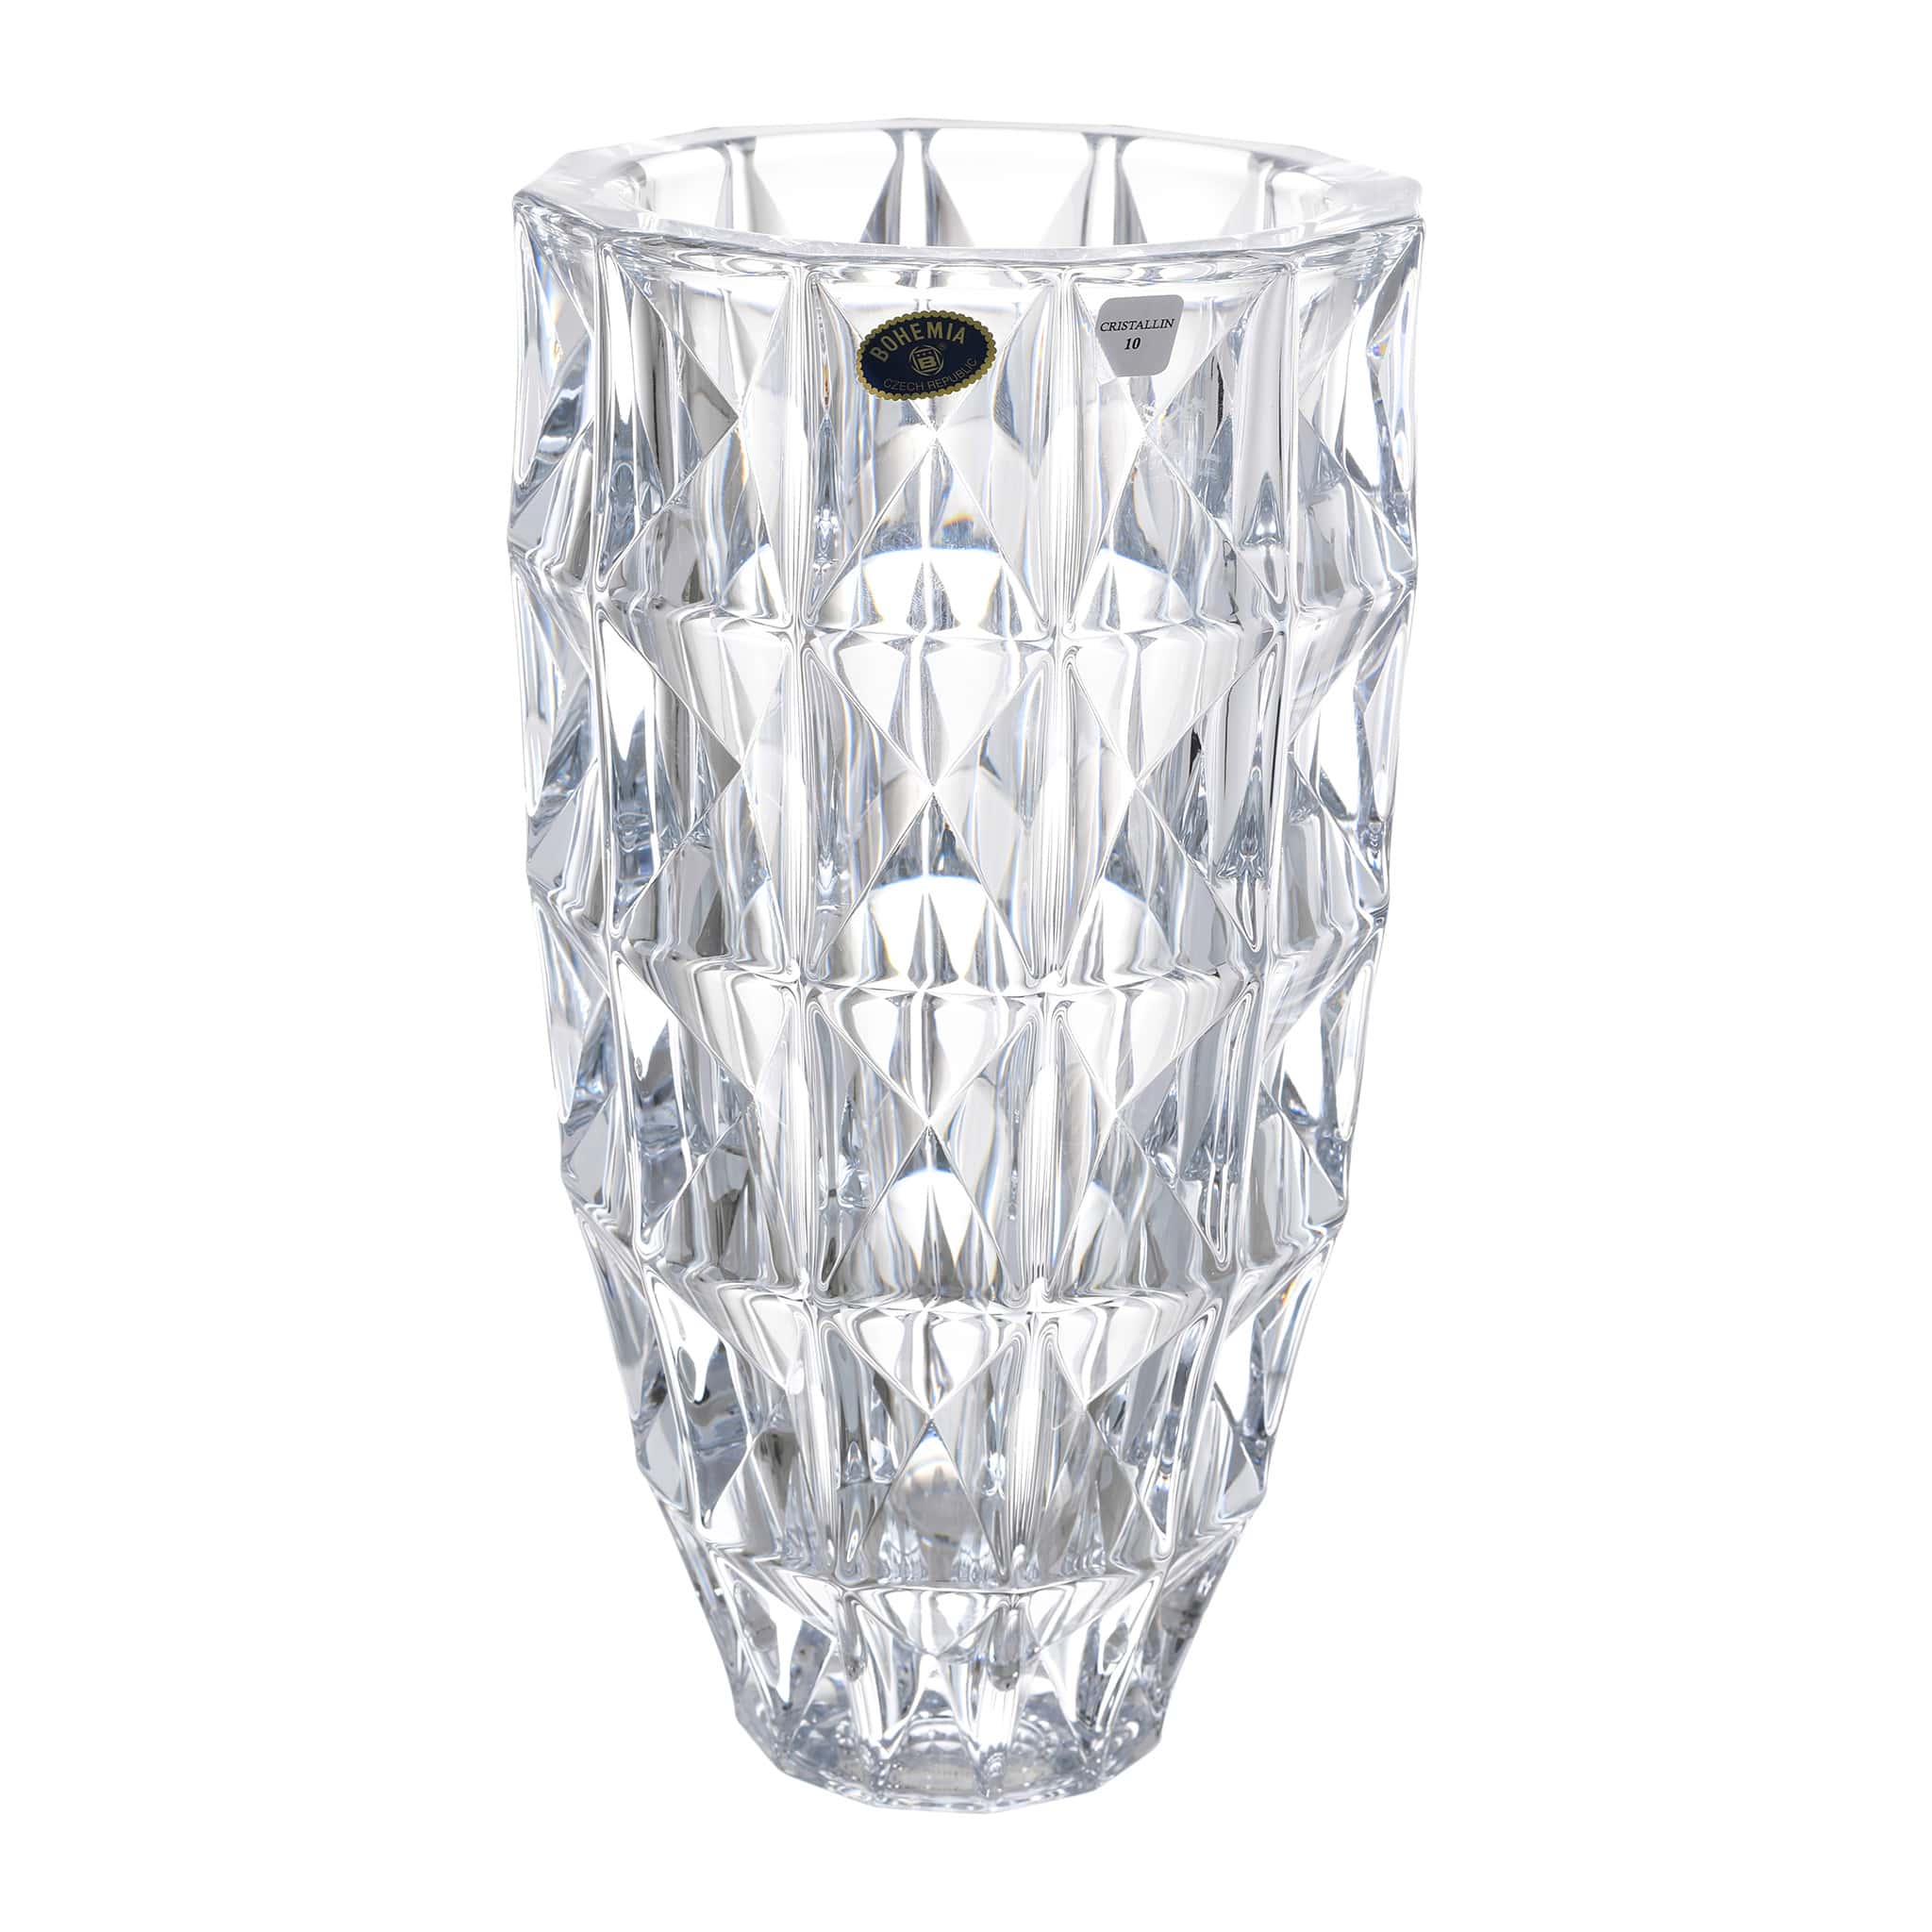 Bohemia Crystal - Cylindrical Crystal Vase - Diamond Design - 25.5 cm - 2700010126